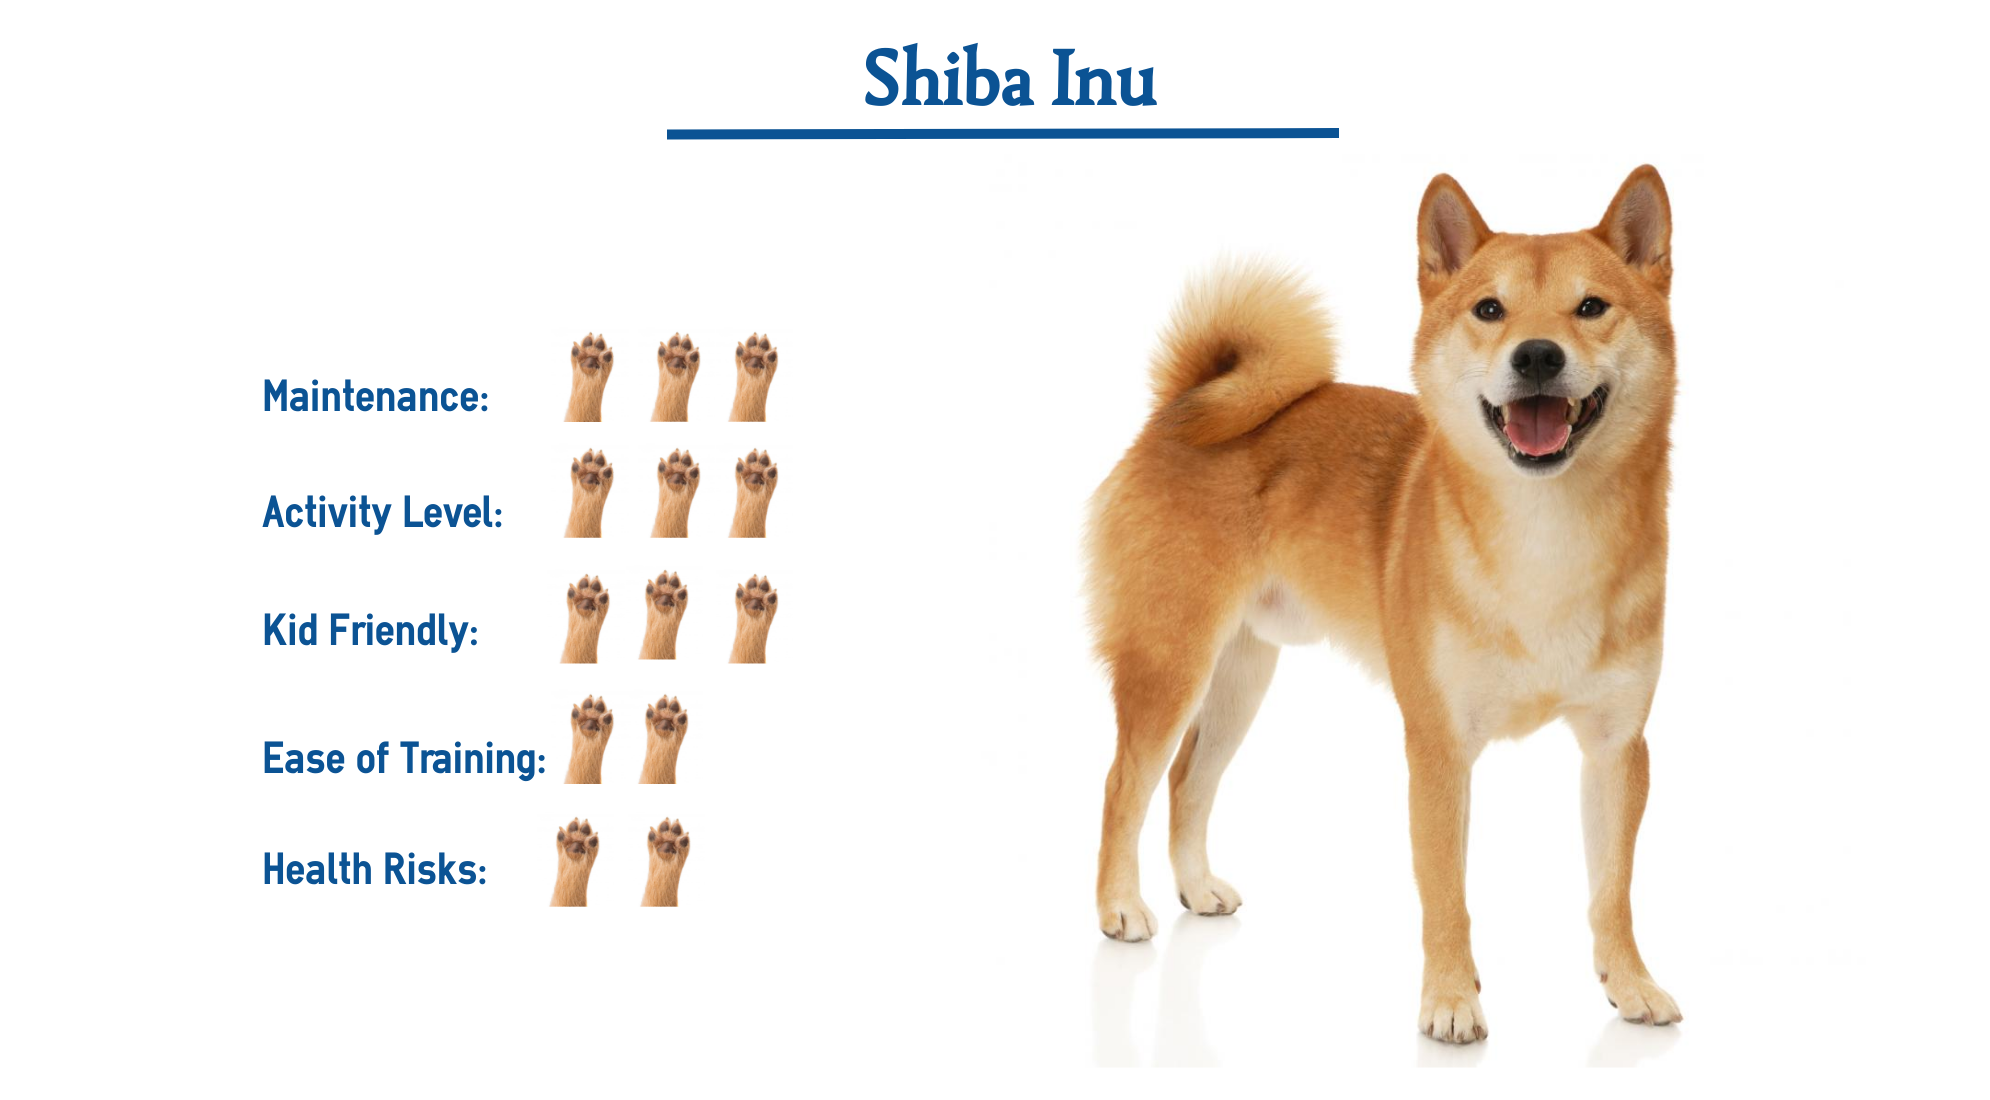 is a shiba inu a prey breed